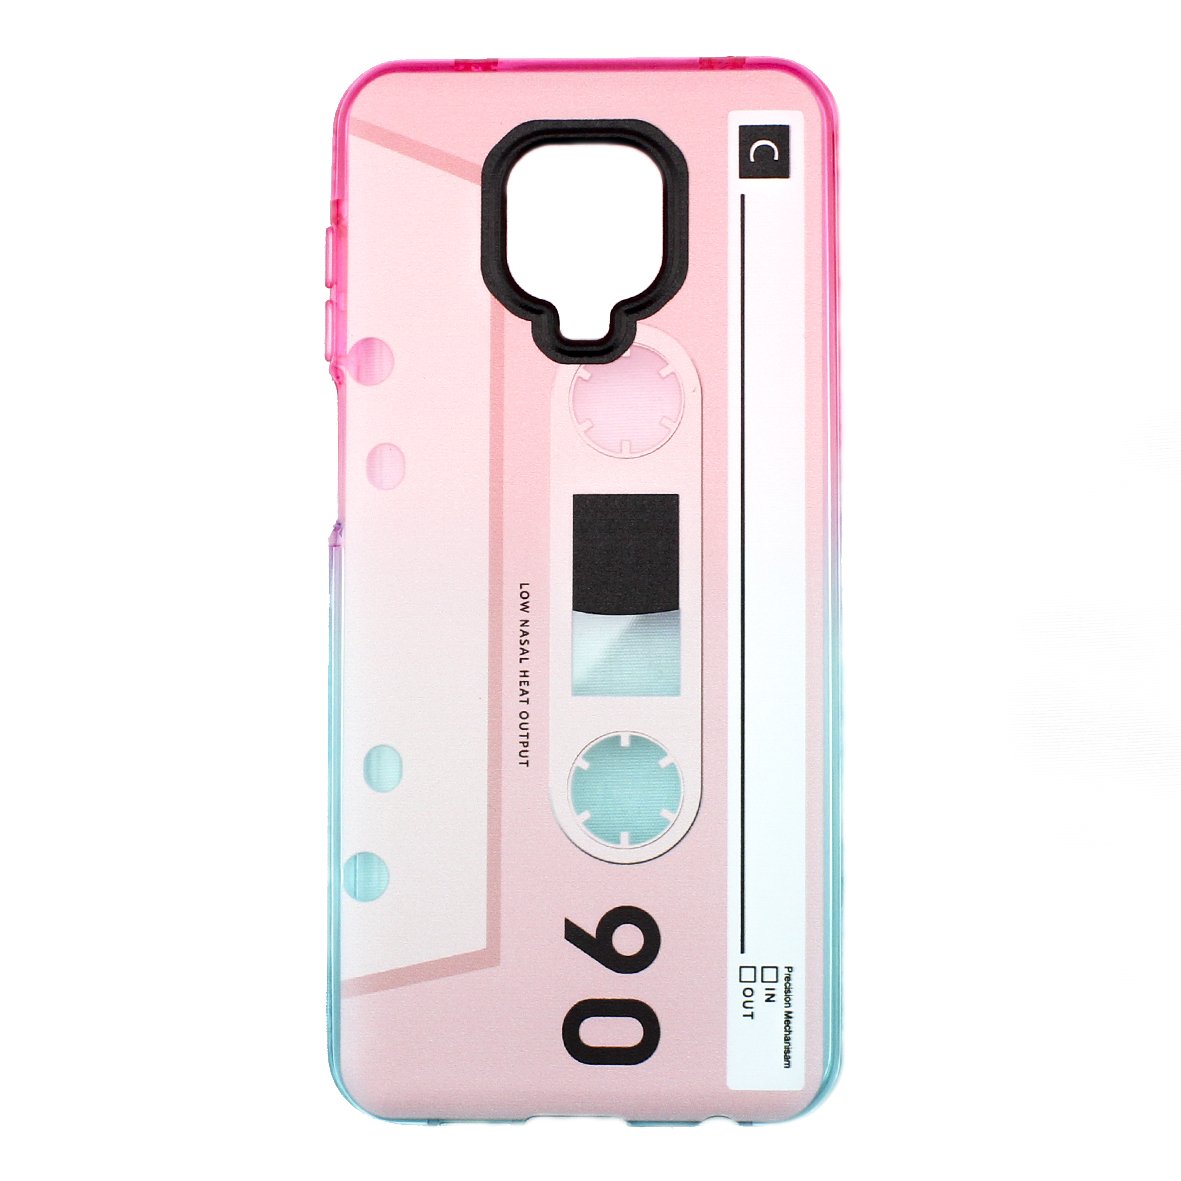 Funda Triche Color Rosa Con Diseño Cassette Para Xiaomi Redmi 9a